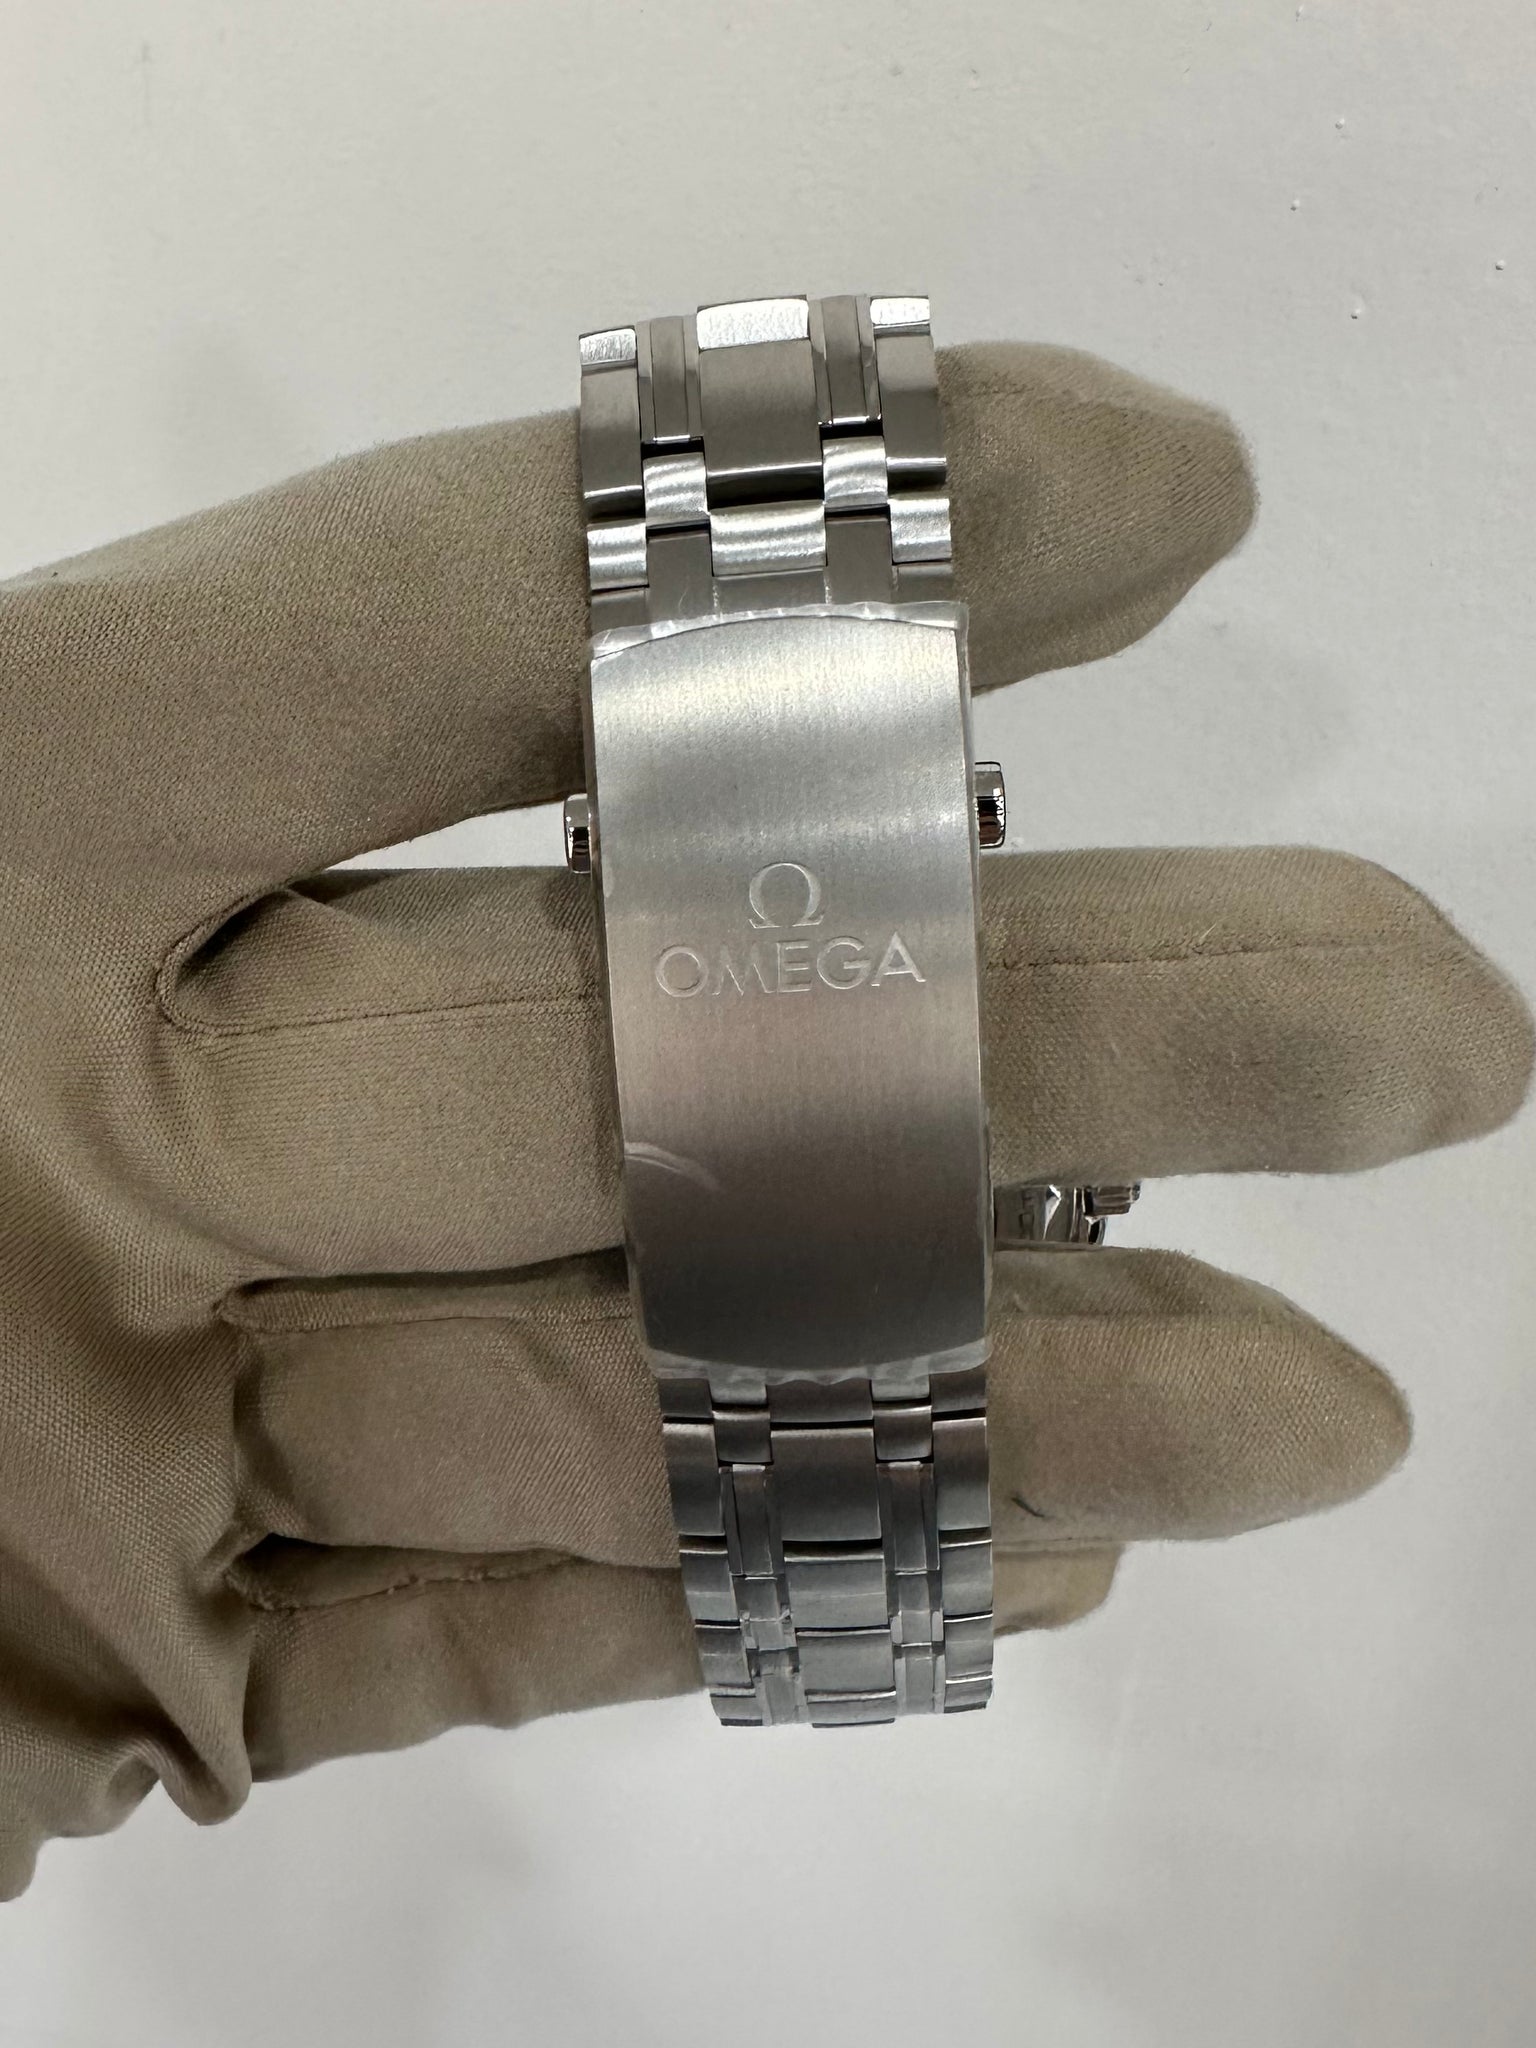 Omega Seamaster 300M White Dial on Bracelet (Brand New)